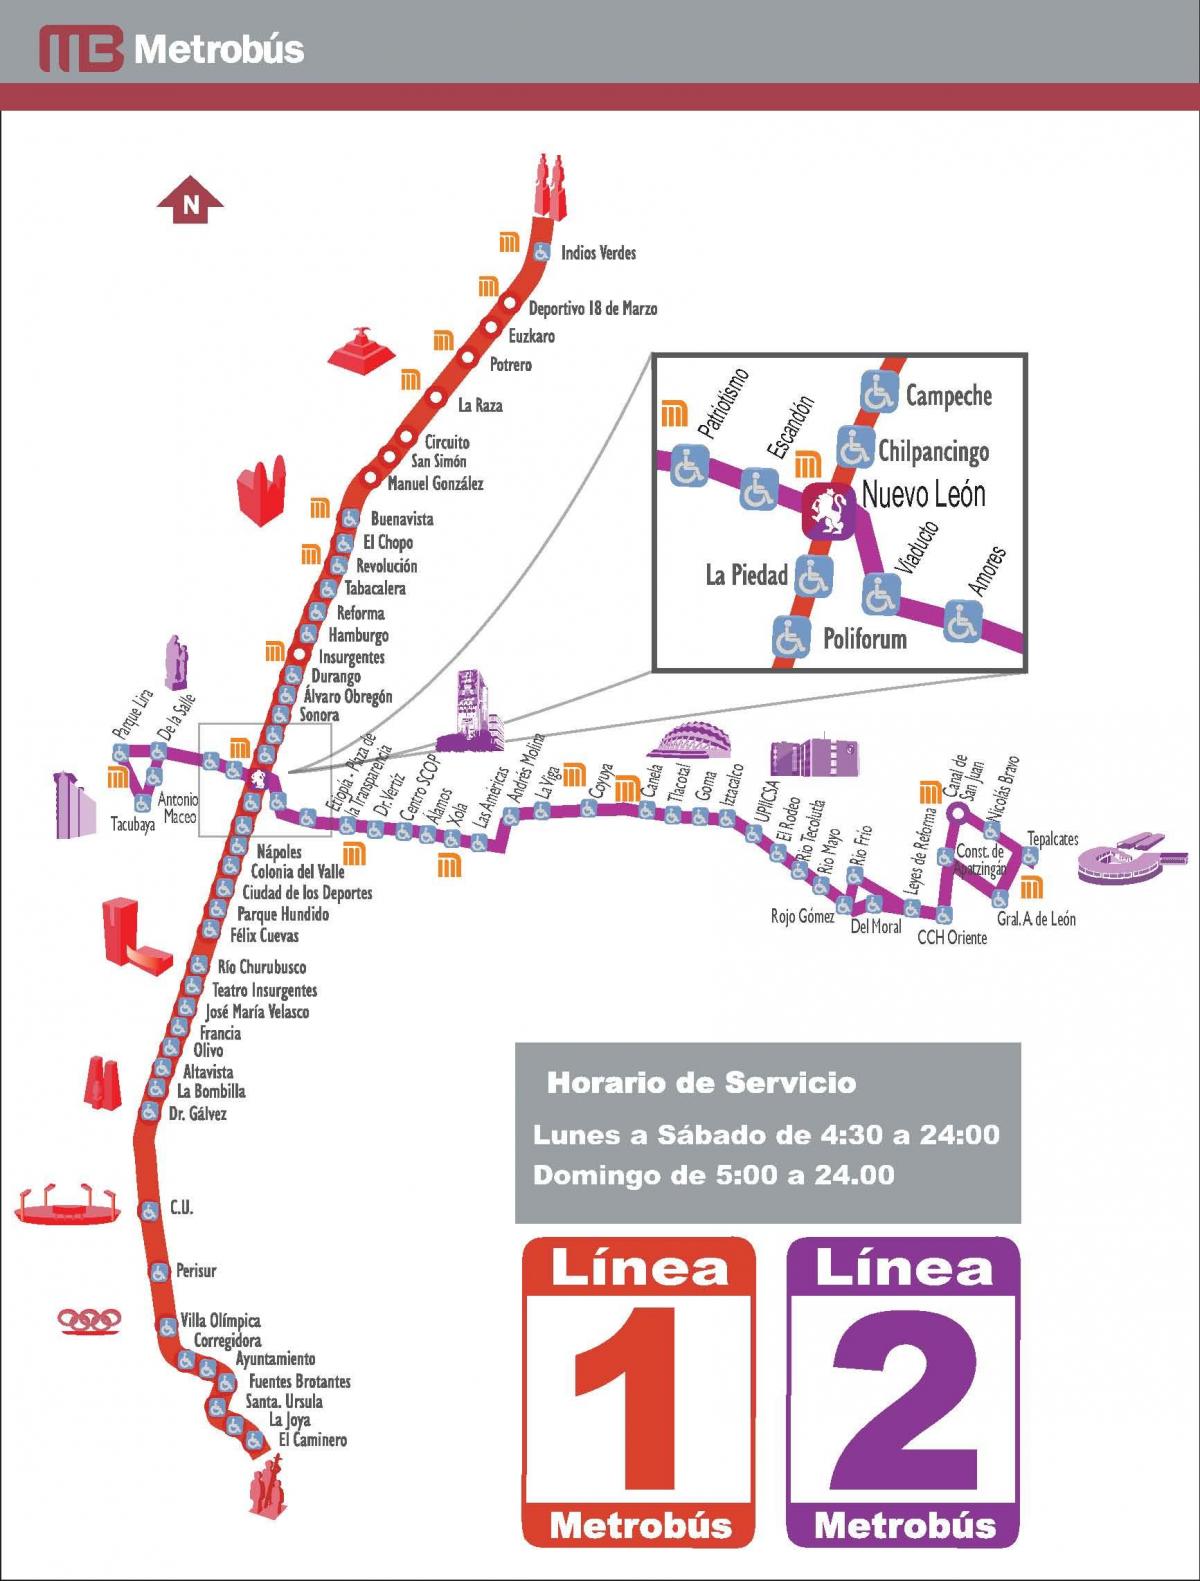 نقشه metrobus مکزیکو سیتی